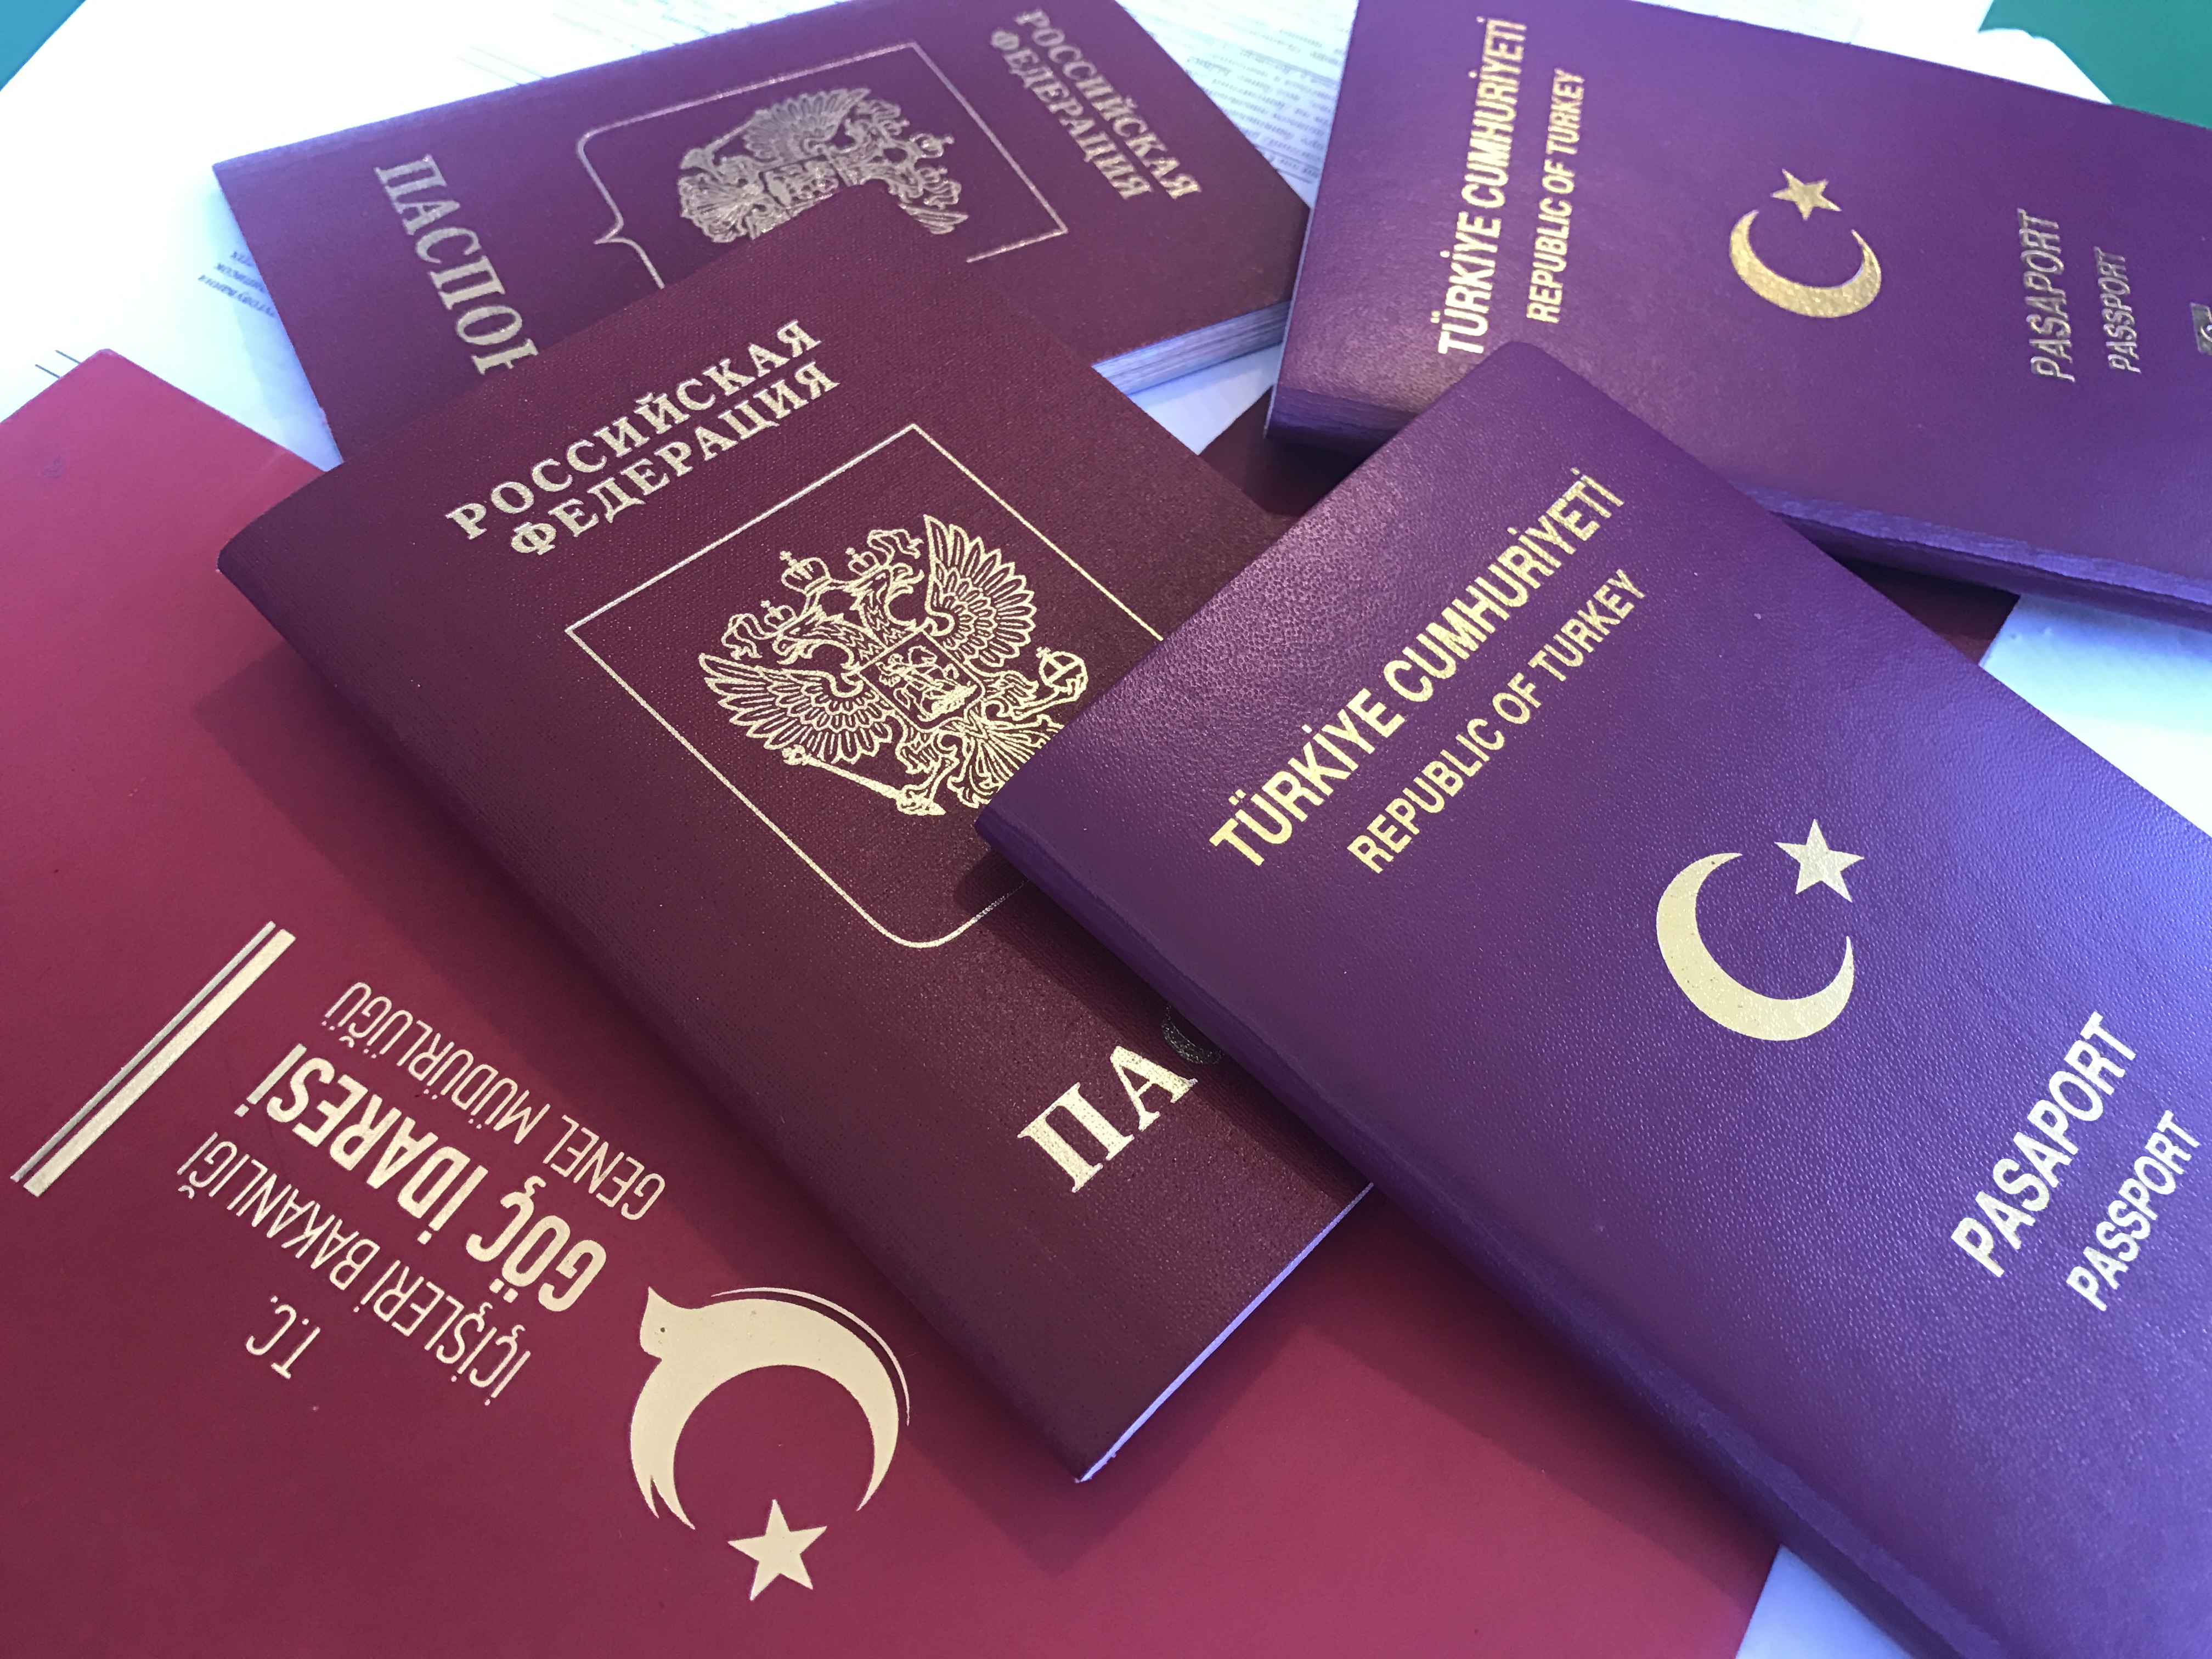    Уведомление  УФМС о получении вида на жительство в Турции 